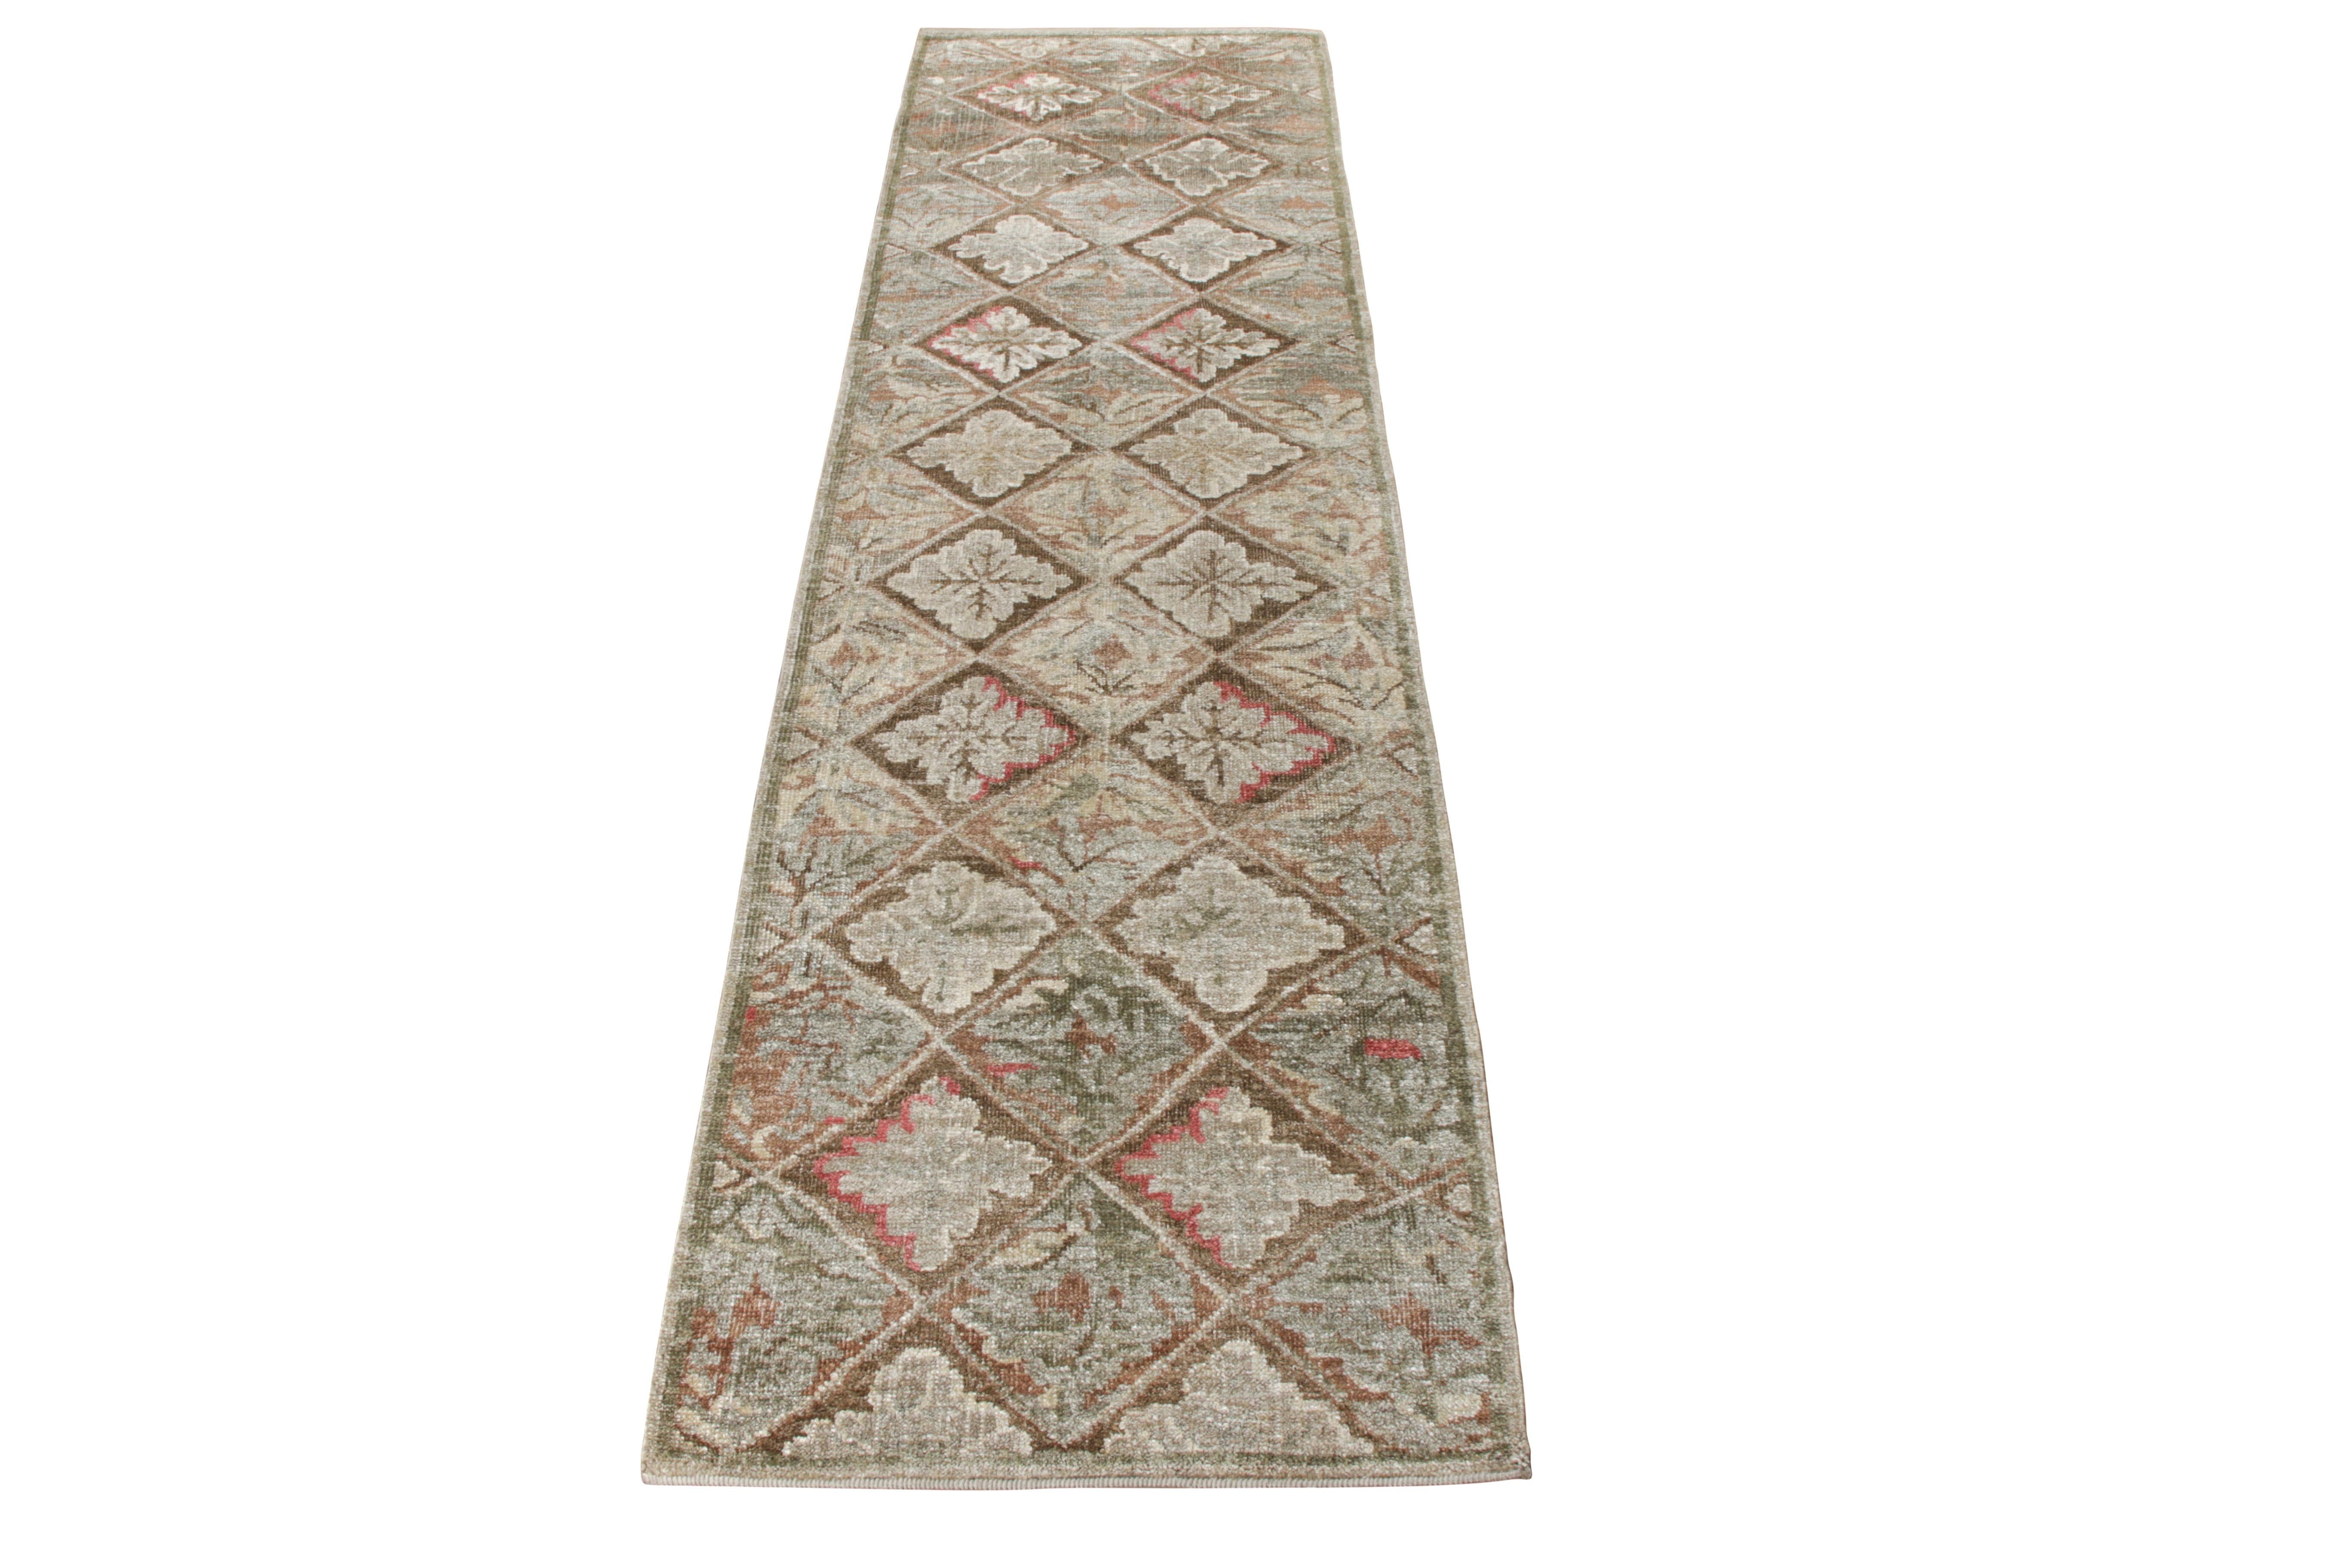 Rug & Kilim rend hommage au célèbre tapis français d'Aubusson en ajoutant ce tapis de course à sa très convoitée Collectional. Noué à la main dans un sari de soie de la meilleure qualité, cette pièce inspirée du XVIIIe siècle reflète un attrait